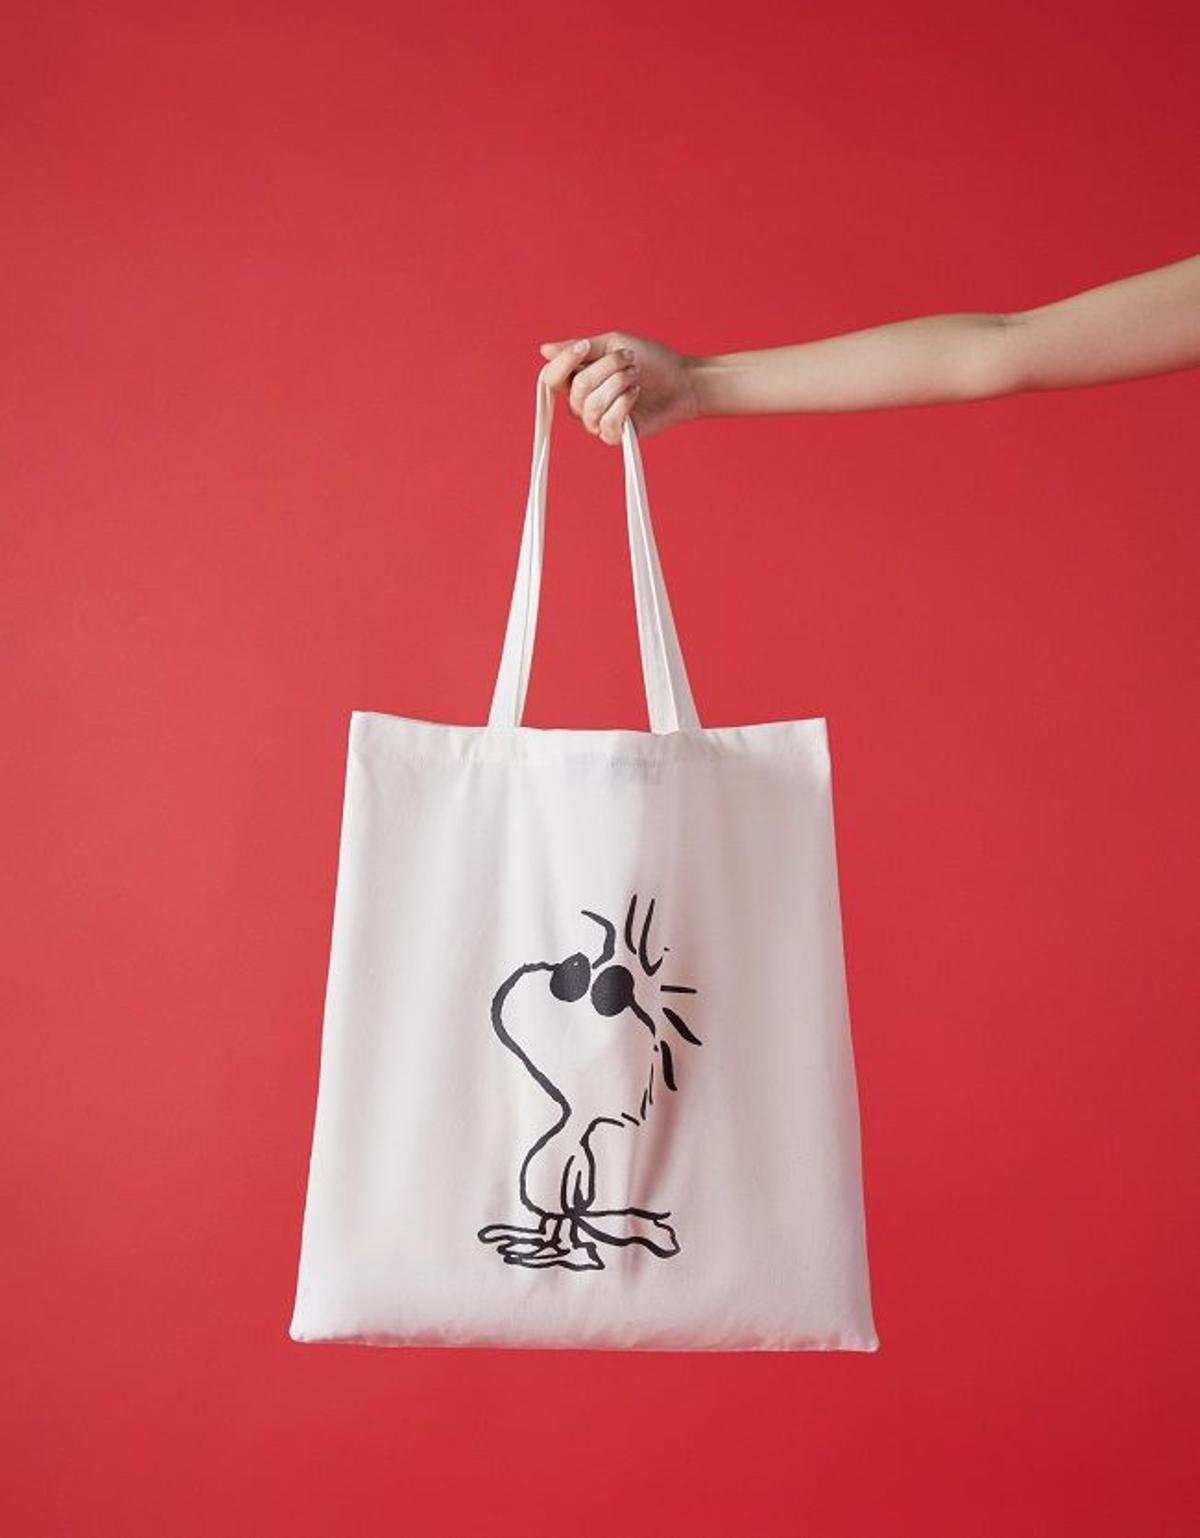 La bolsa de Woodstock, el mejor amigo de Snoopy